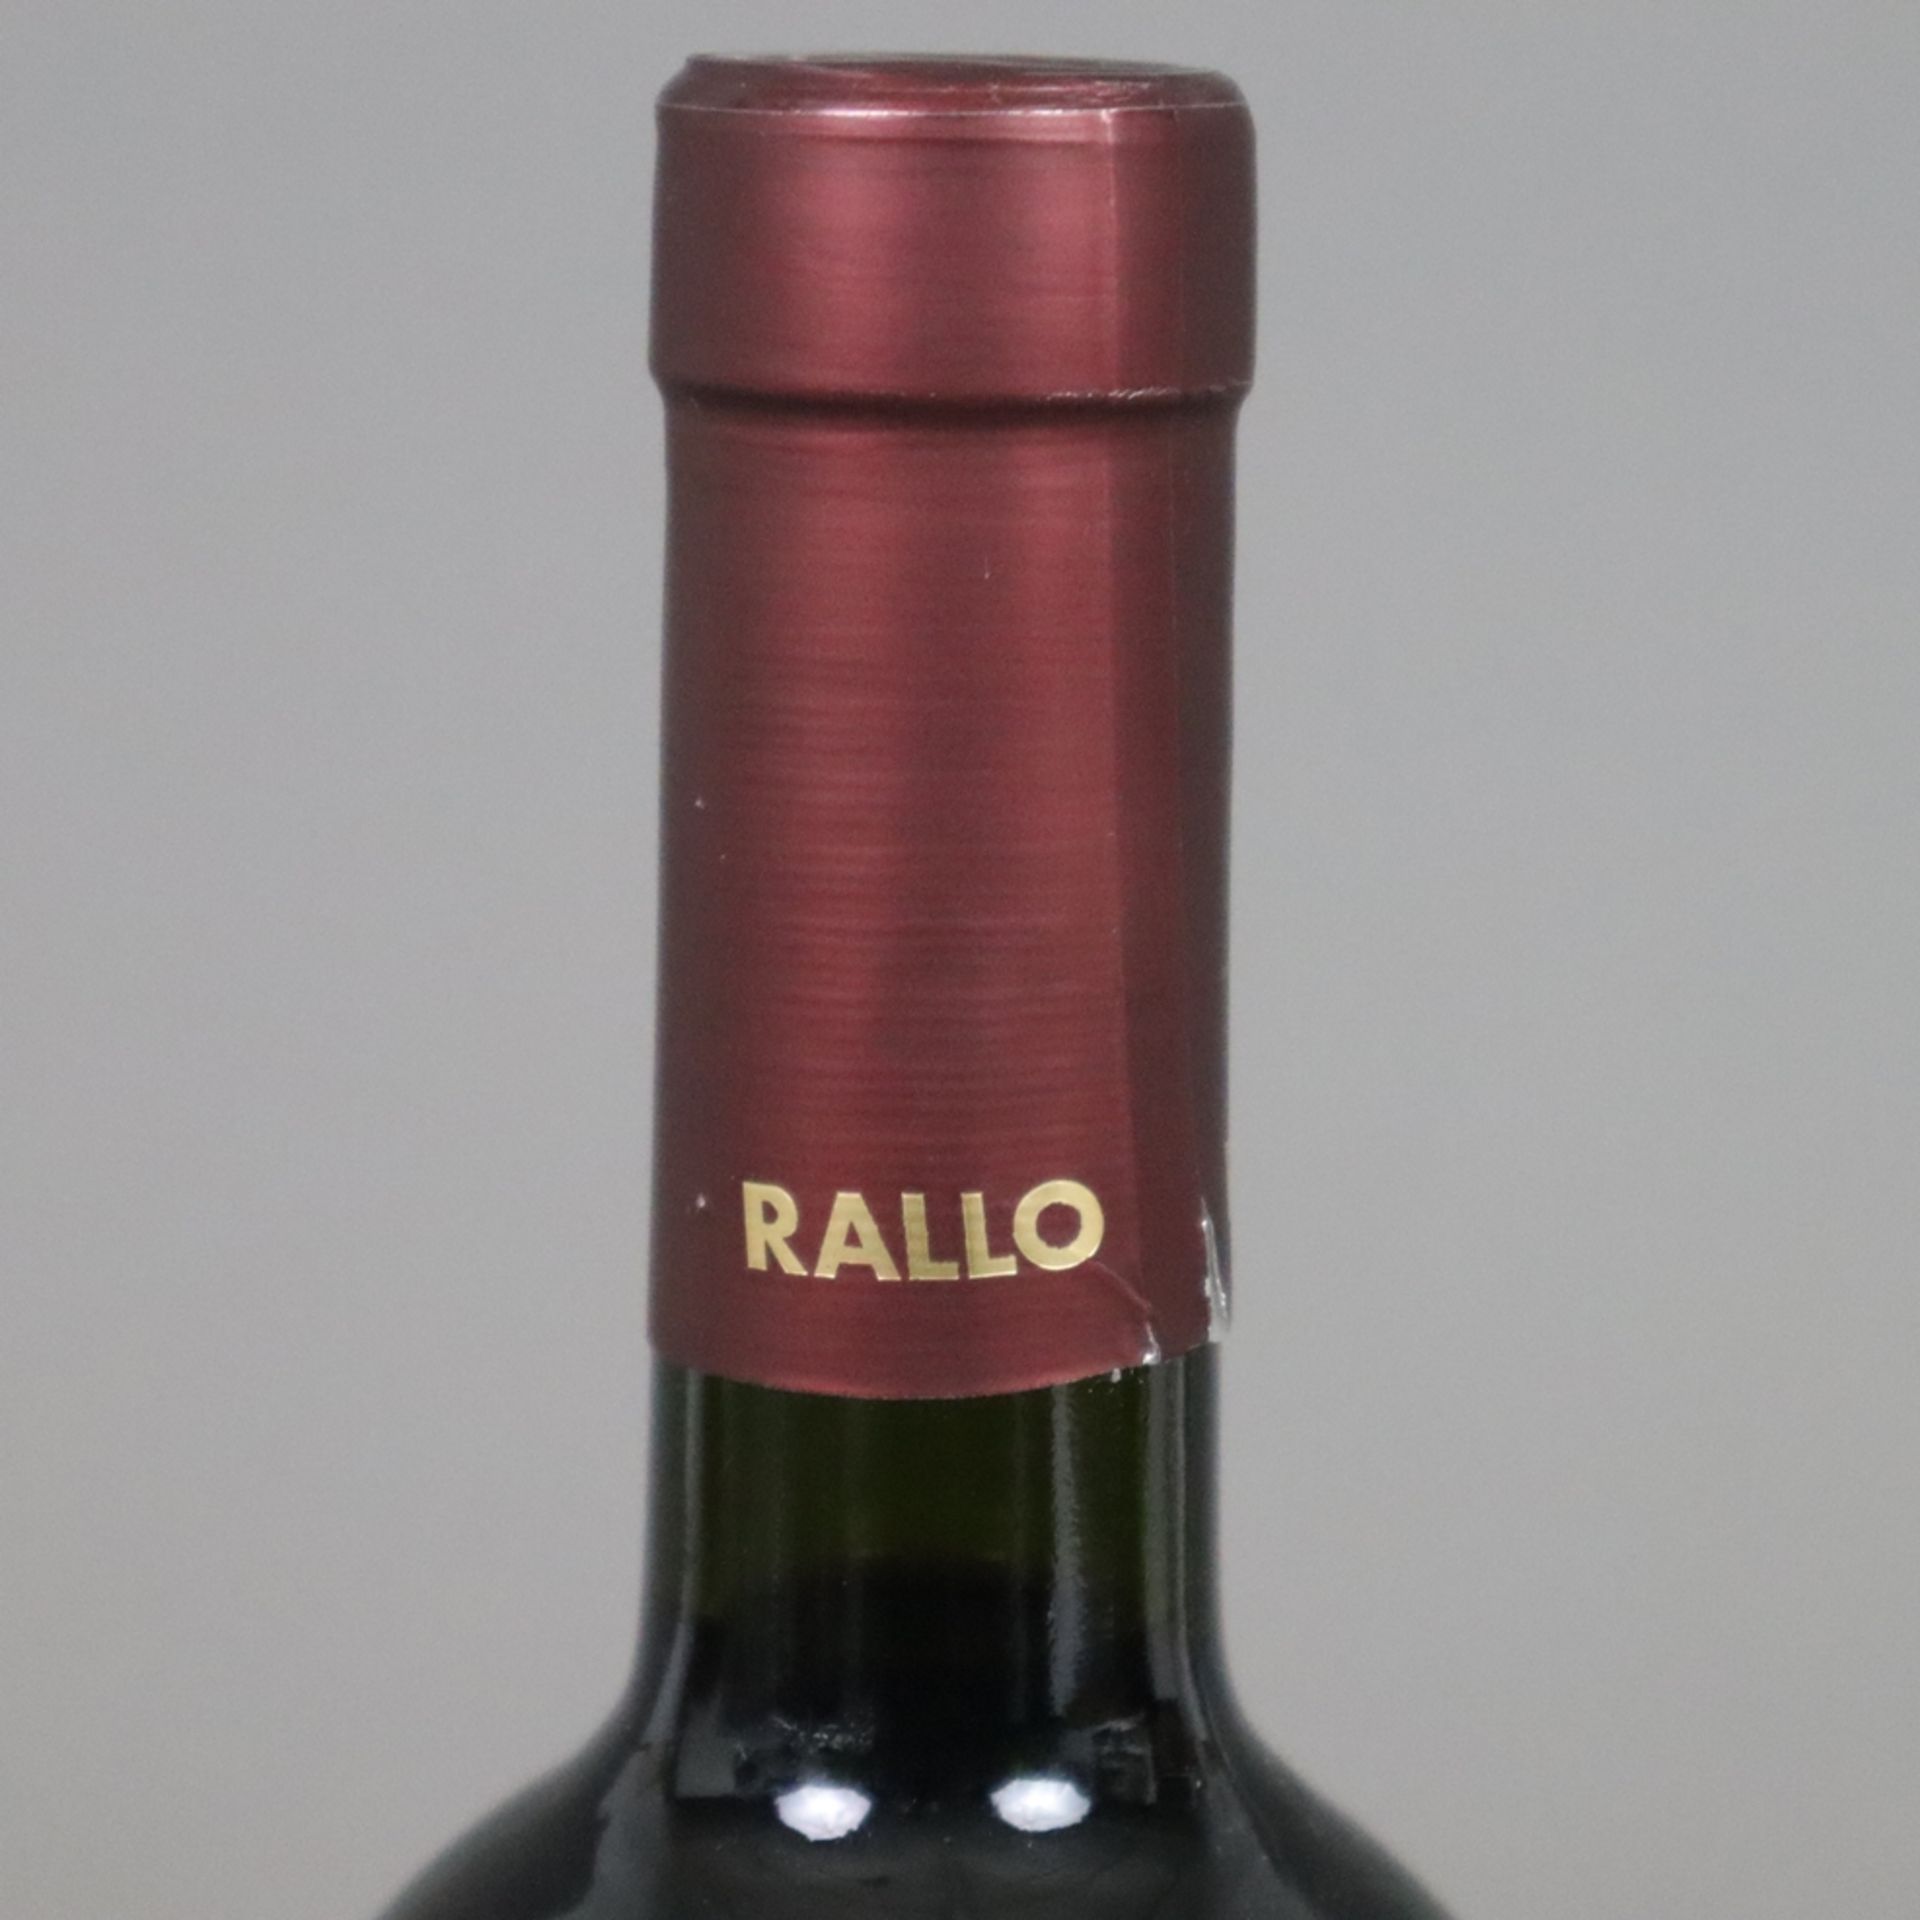 Weinkonvolut - 2 Flaschen 2007 Rallo Vesco Rosso Nero d'Avola /Cabernet Sauvignon Sicilia IG, Itali - Bild 3 aus 5